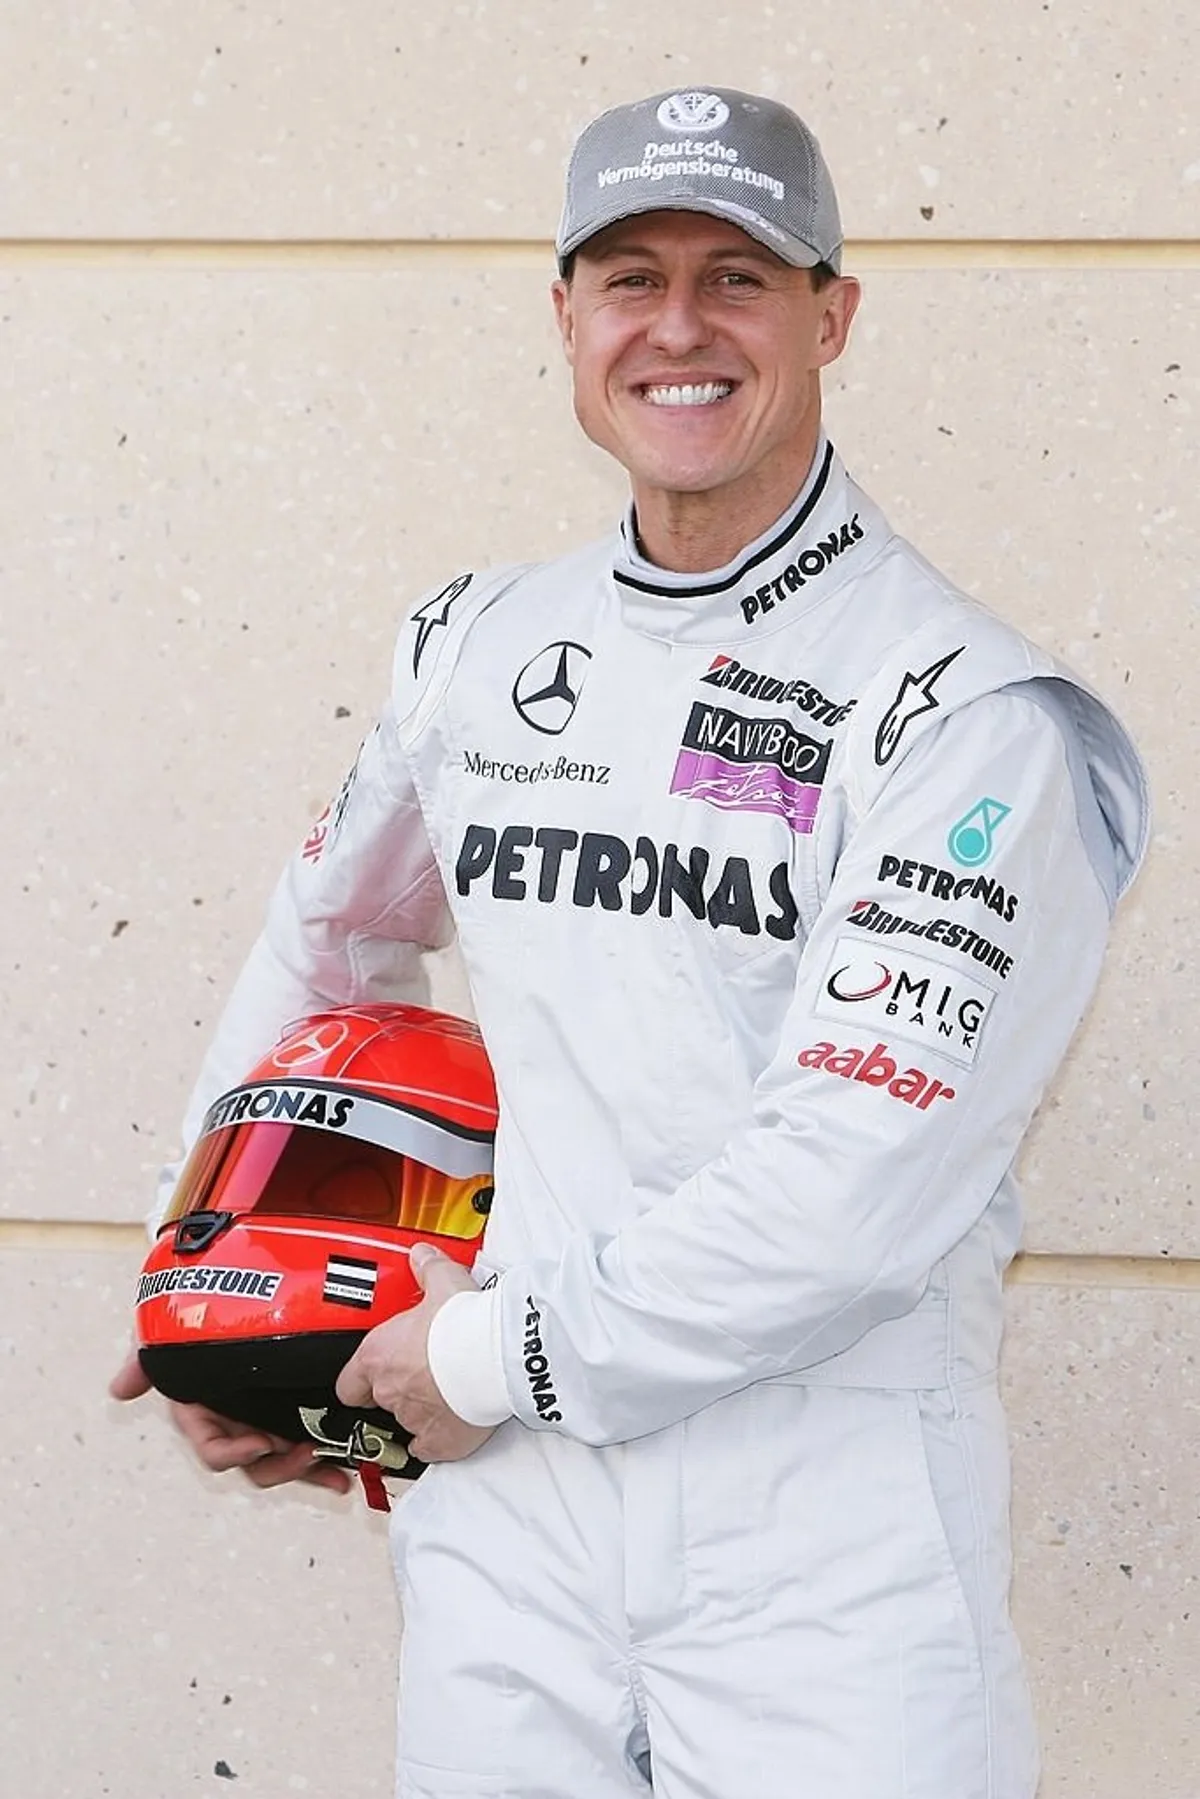 Michael Schumacher assiste à la séance de portrait officiel des pilotes lors de l'avant-première du Grand Prix de Formule 1 de Bahreïn au Circuit international de Bahreïn, le 11 mars 2010 à Sakir, Bahreïn. | Photo : Getty Images